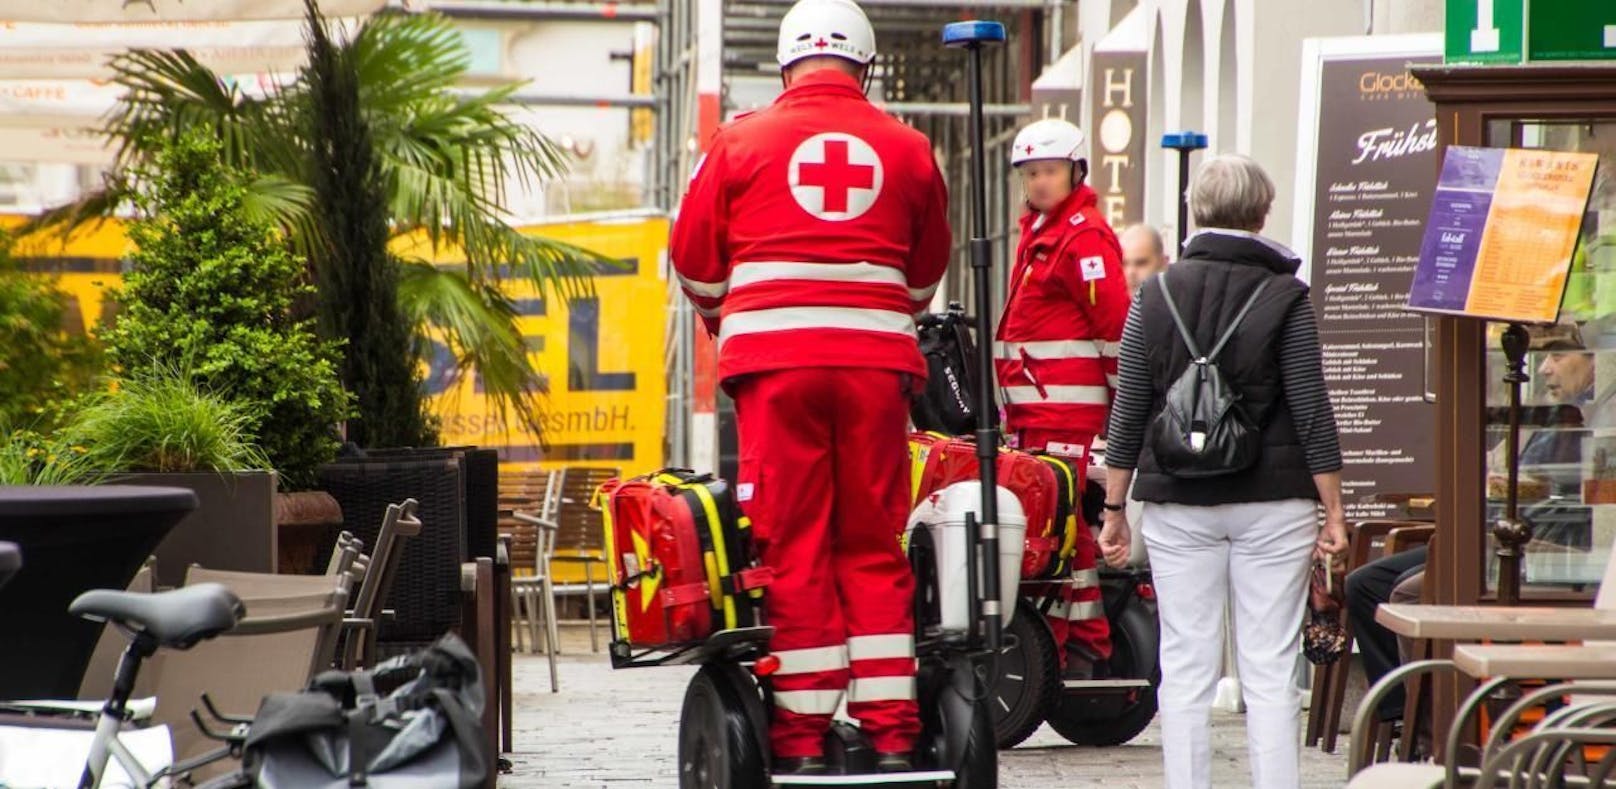 Rettungs-Sanitäter sind in Linz mit Segways unterwegs.